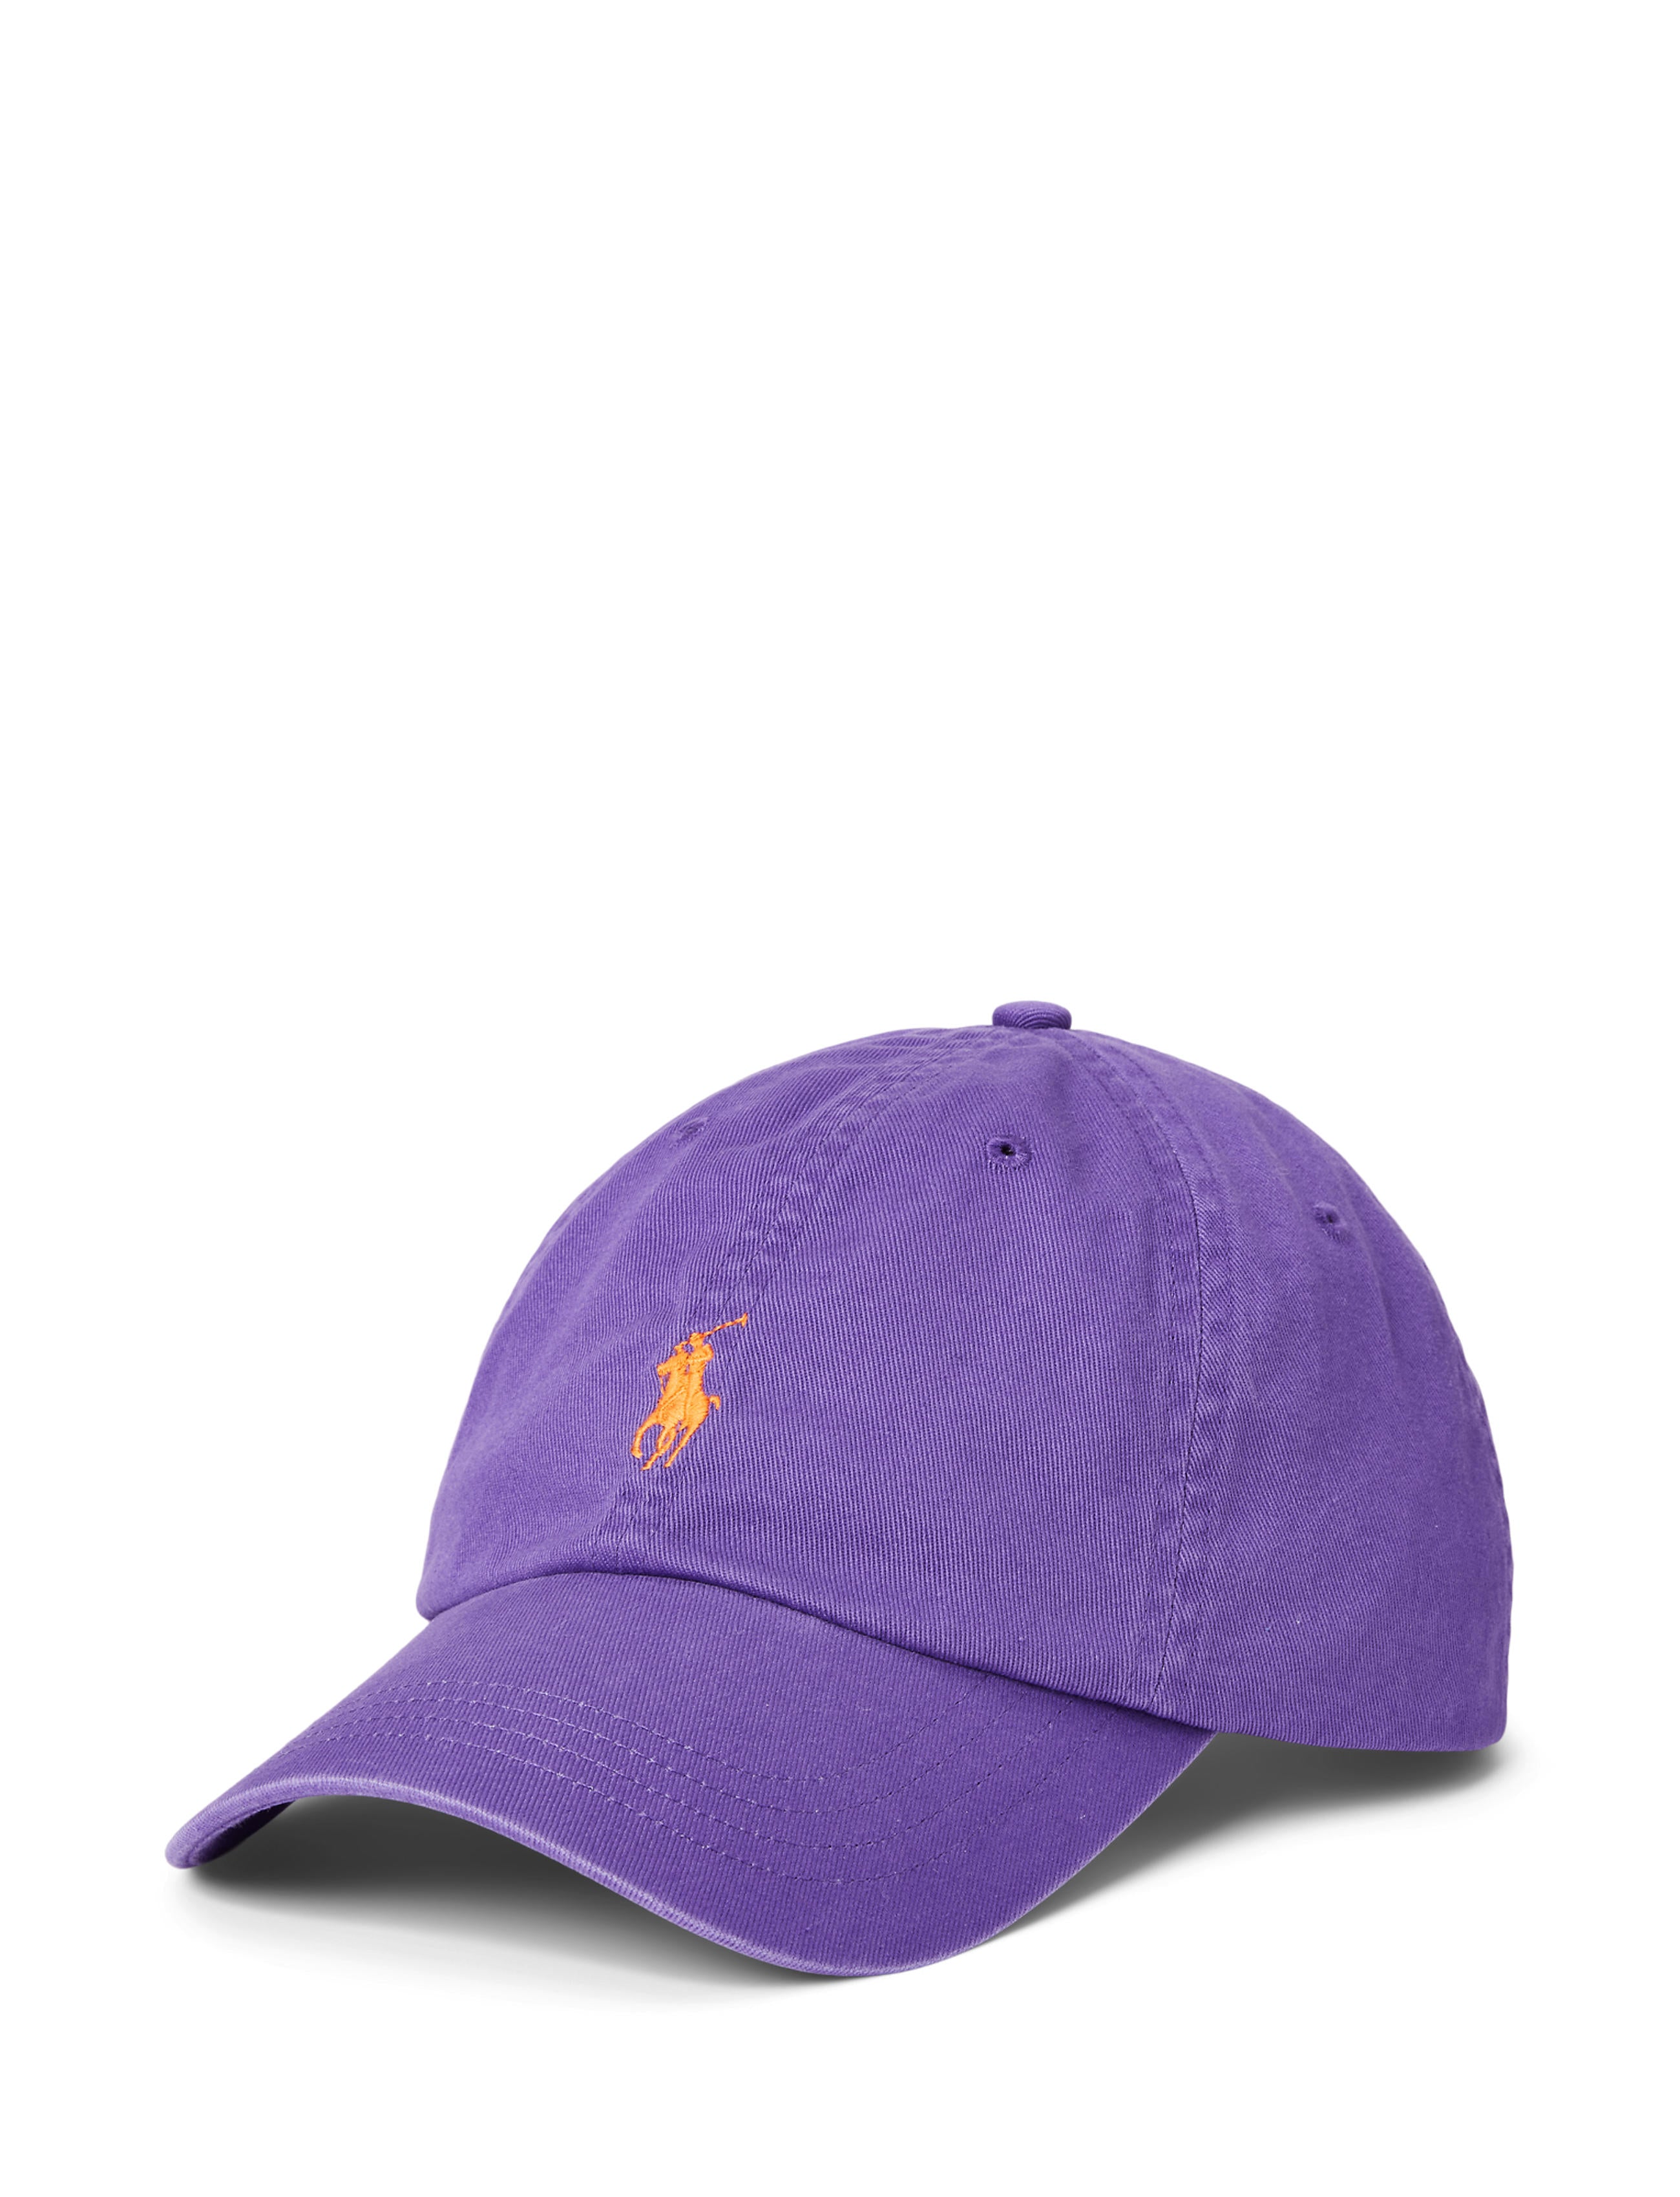 Polo Ralph Lauren Twill Sport Cap Tie Purple – routleys.com.au